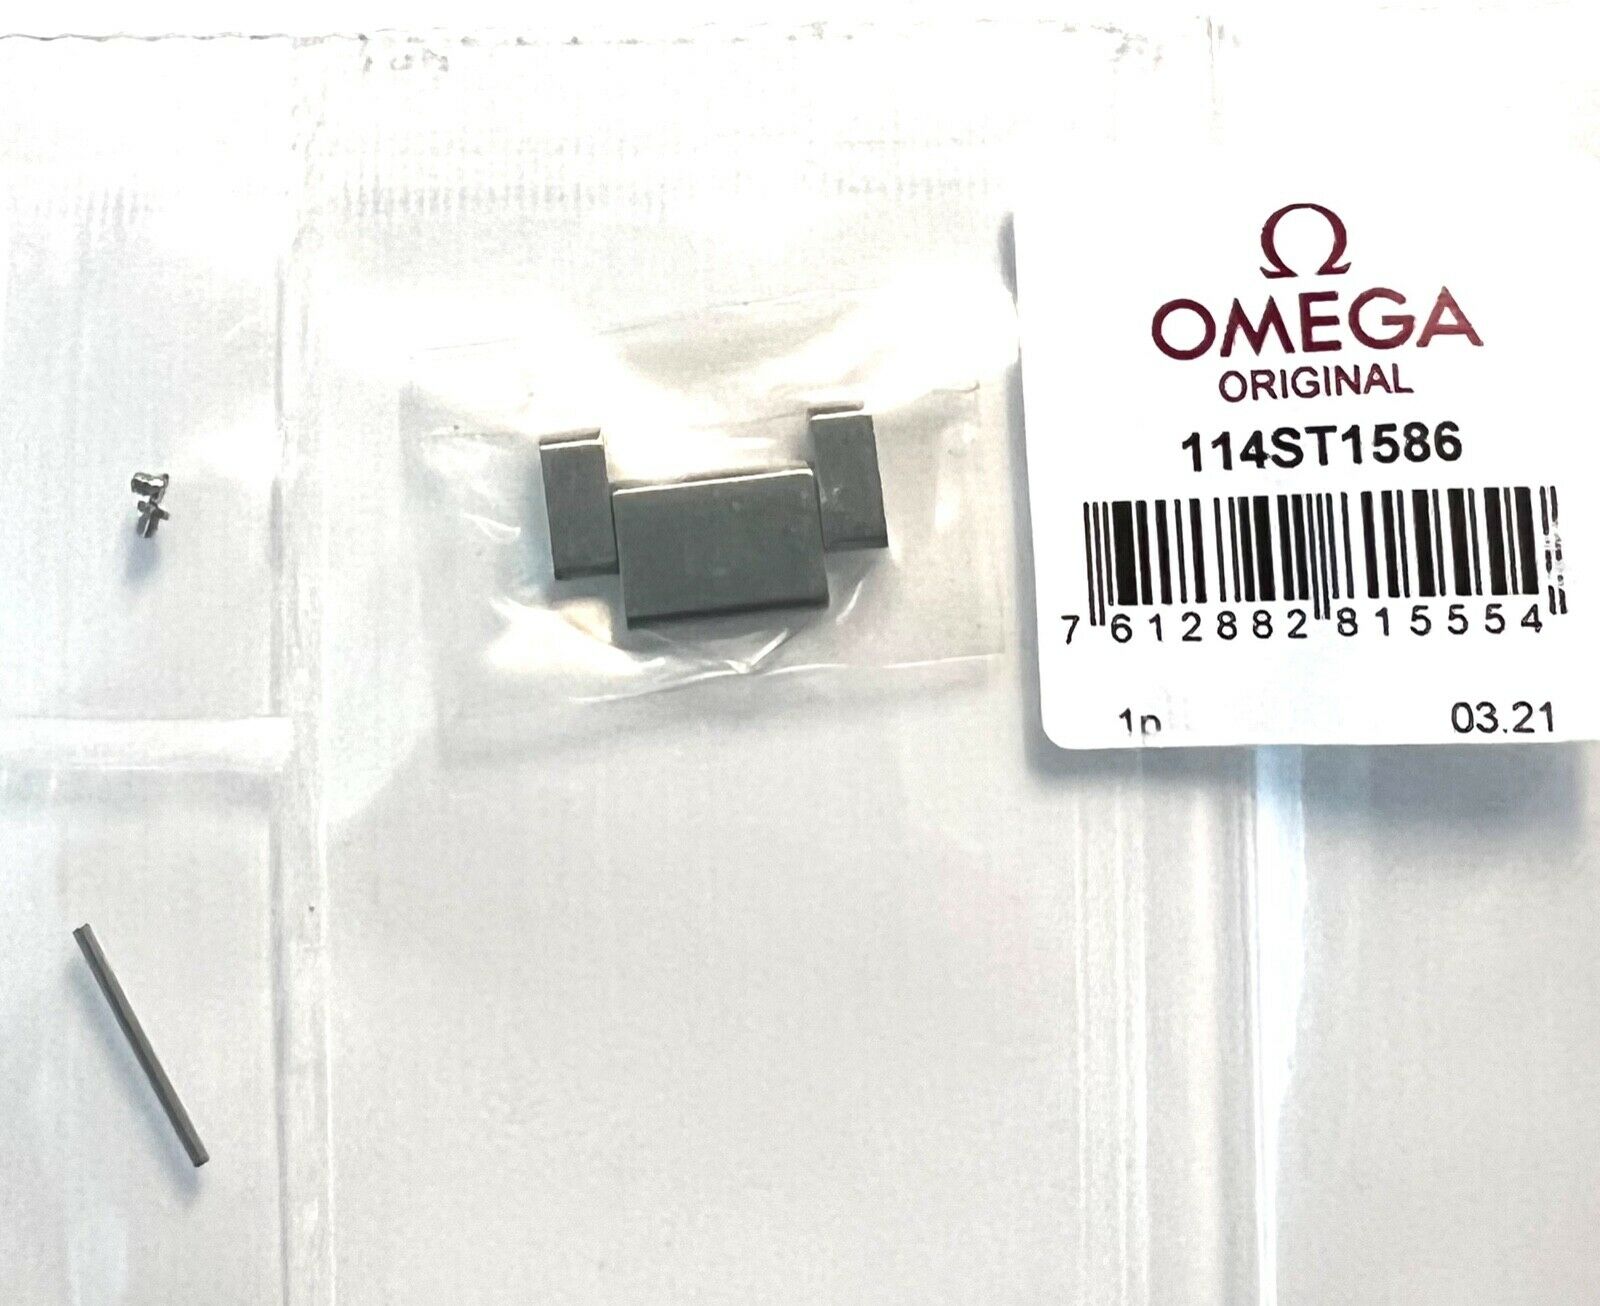 Omega Watch Link For Bracelet Model: 1585/884 or 1585/984